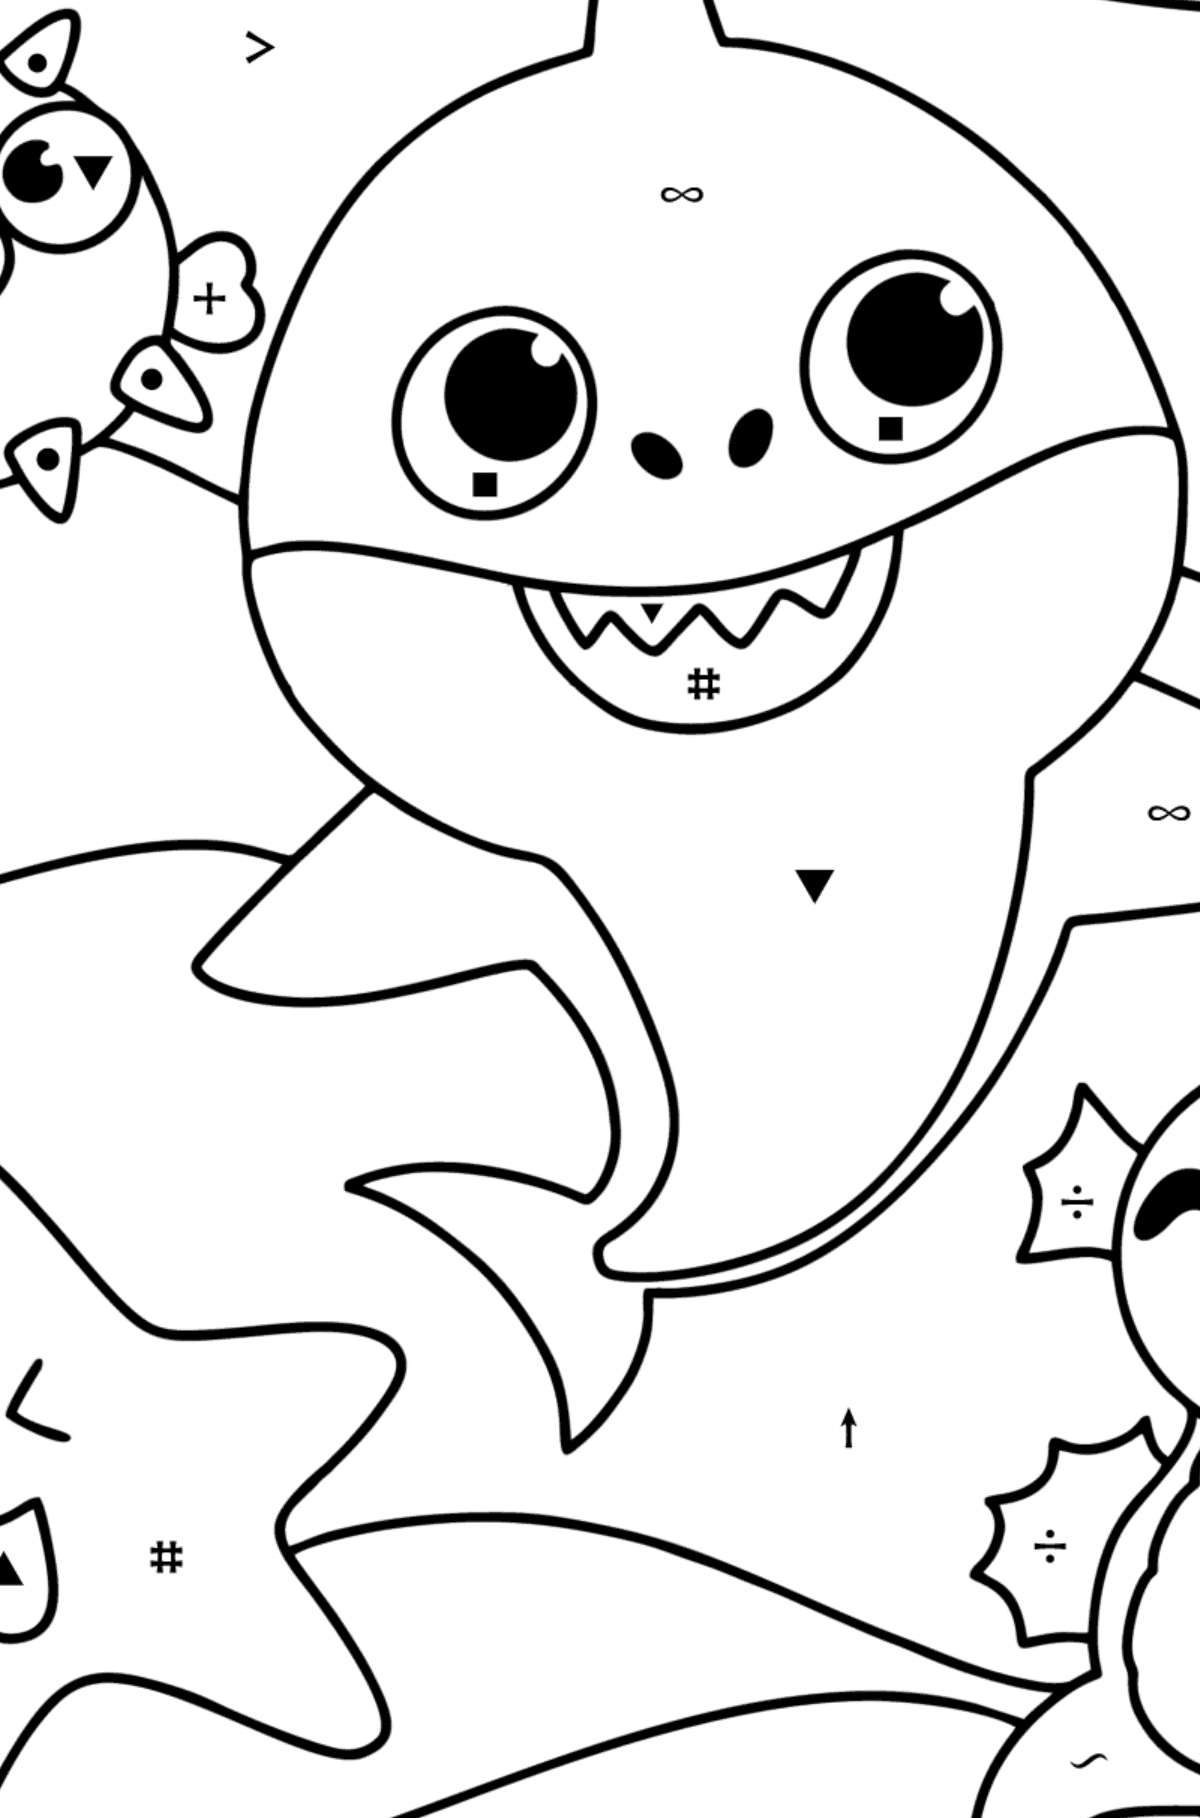 Venner Baby Shark tegning til fargelegging - Fargelegge etter symboler for barn